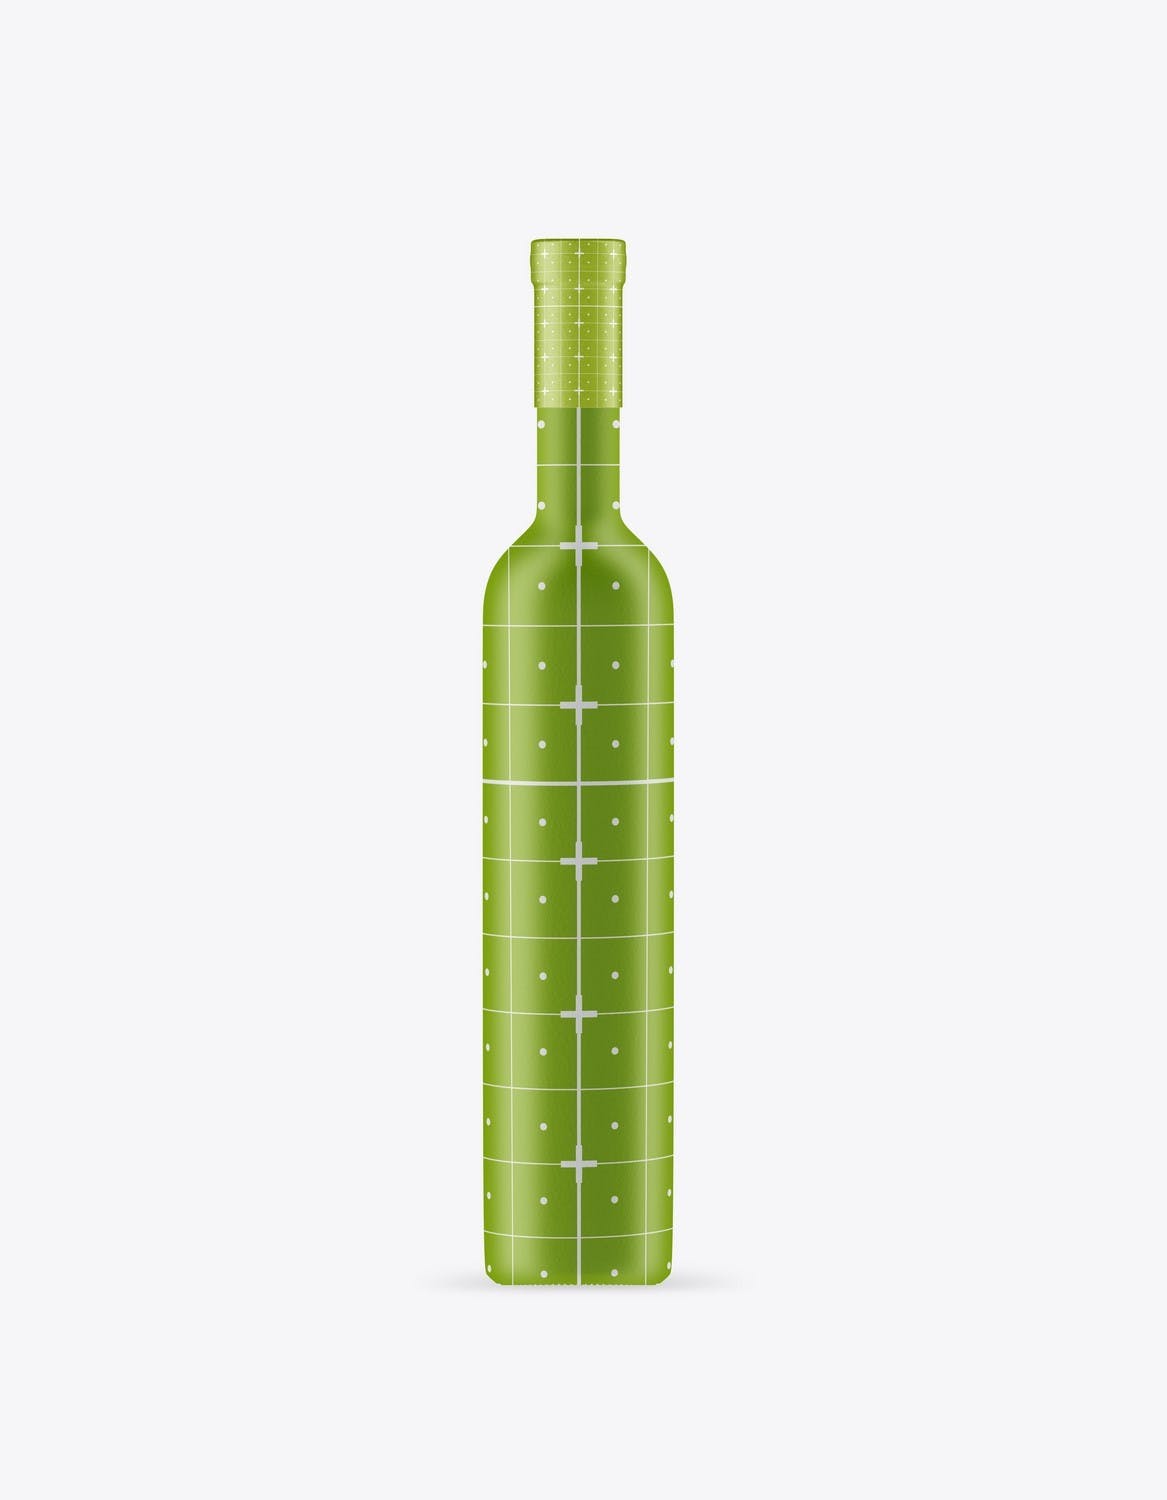 葡萄酒瓶包装设计样机 Set Wine Bottles Mockup 样机素材 第15张